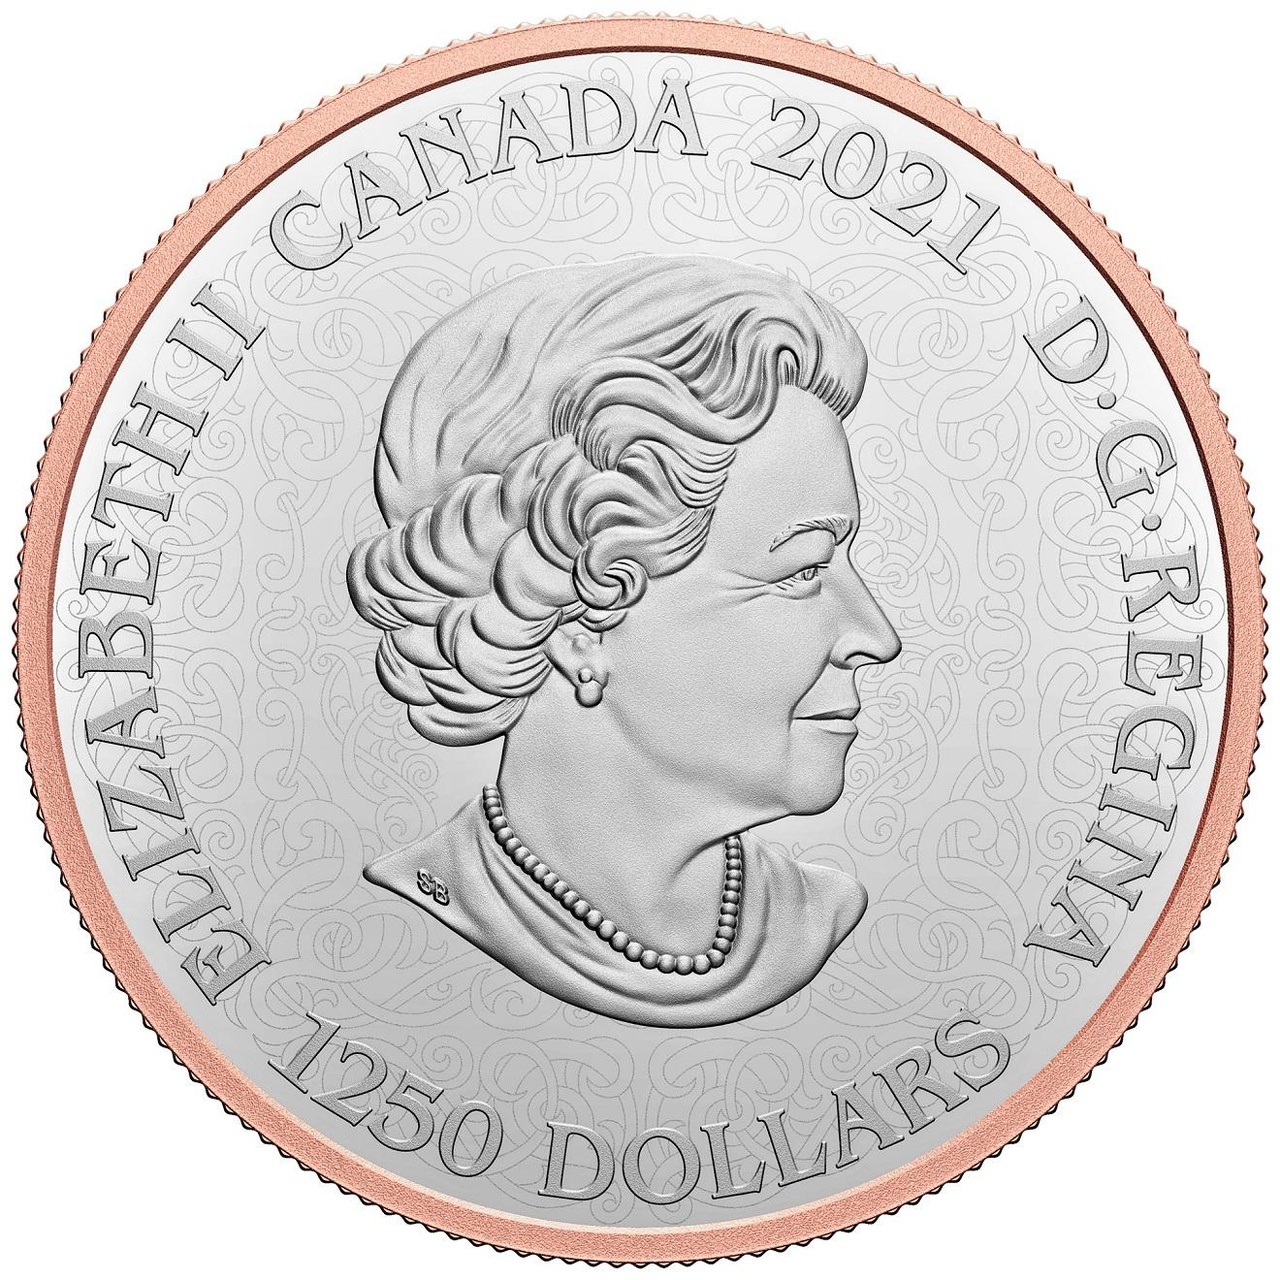 Splendour是皇家加拿大鑄幣廠有史以來第一枚 10 安士之99.95% 純鉑金打造的錢幣。背面飾有一朵雕刻精美的櫻花，鑲嵌共64顆艷彩粉鑽（總重 1.2 克拉），正面飾有藤蔓圖案及英國女王伊麗莎白二世肖像，全球限量鑄造5枚。 